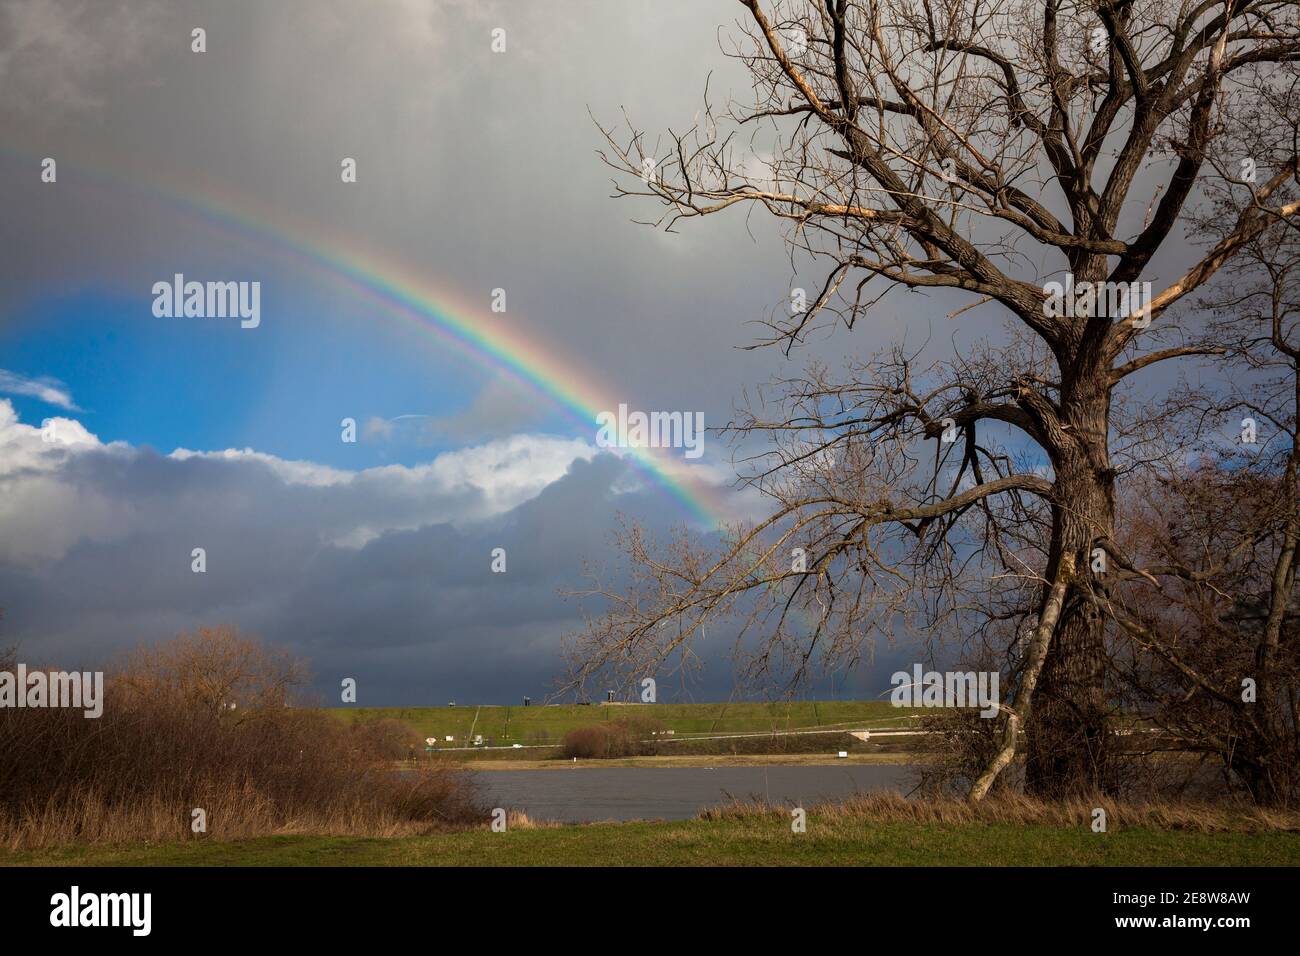 arcobaleno e vecchio albero nelle pianure alluvionali del fiume Reno nel quartiere Merkenich, Colonia, Germania. Reinbogen und Alter Baum in der Rheinaue bei Foto Stock